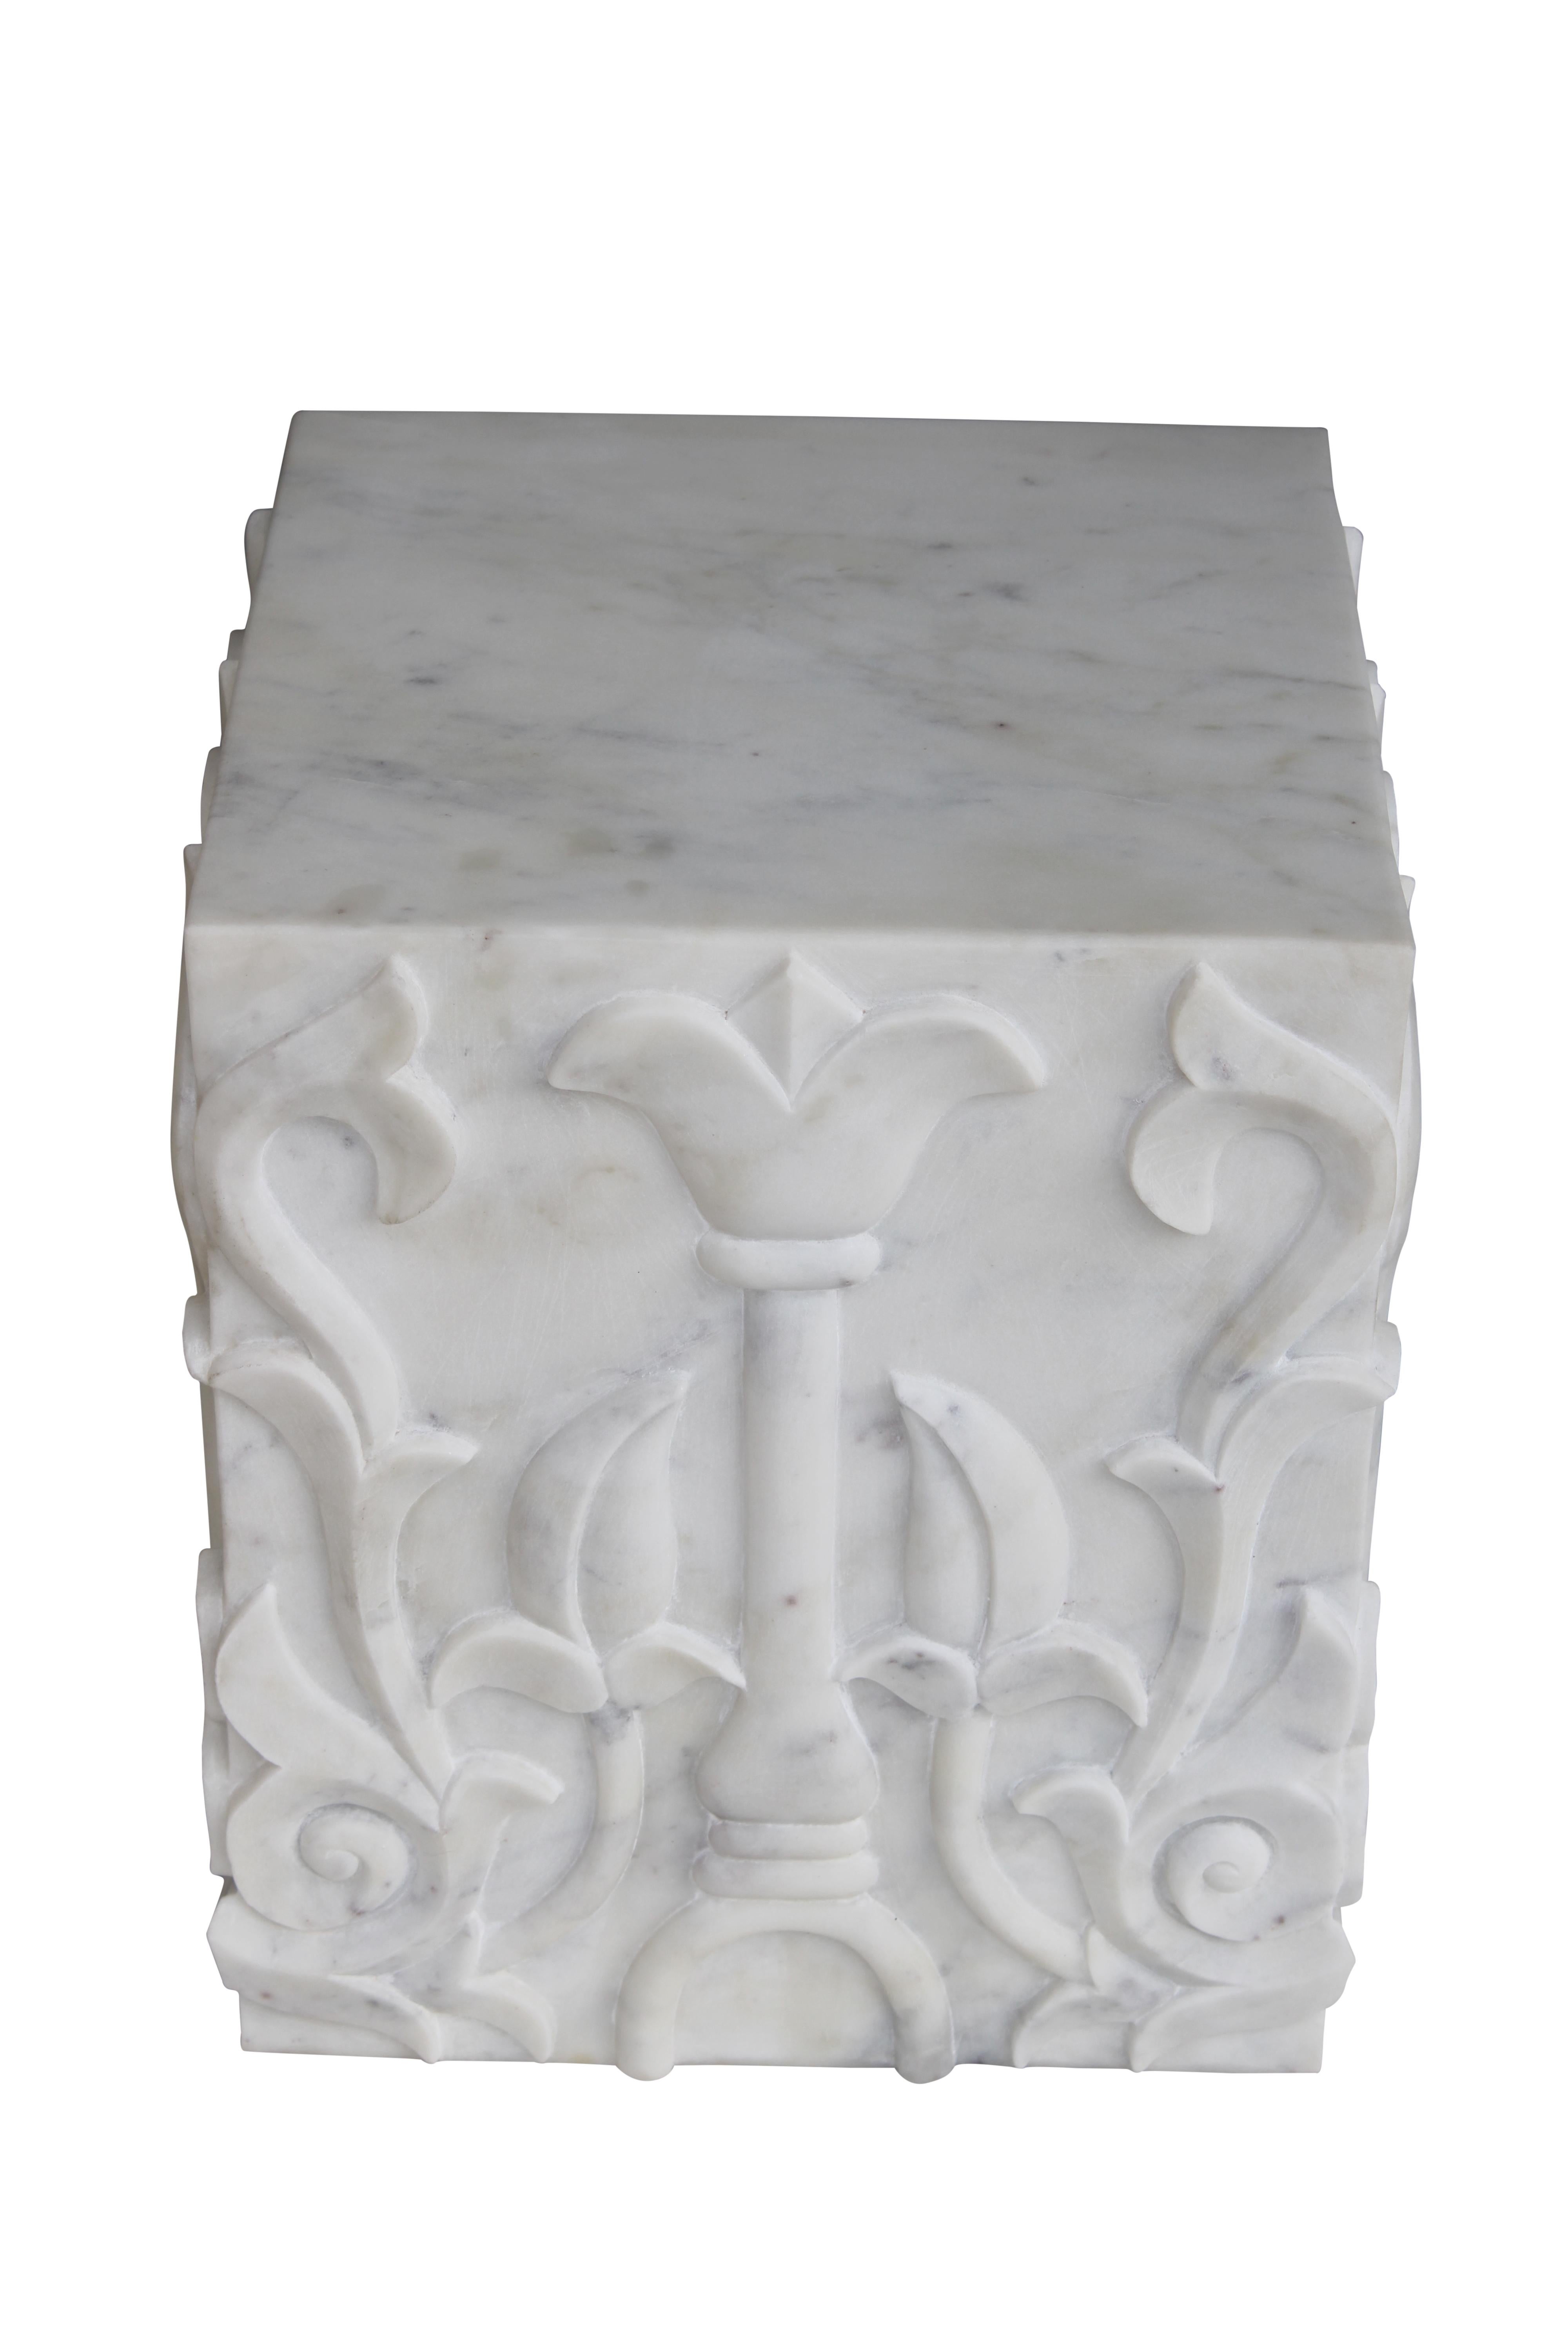 Sculpté à la main Piédestal lotus sculpté en marbre blanc fabriqué à la main en Inde par Stephanie Odegard en vente